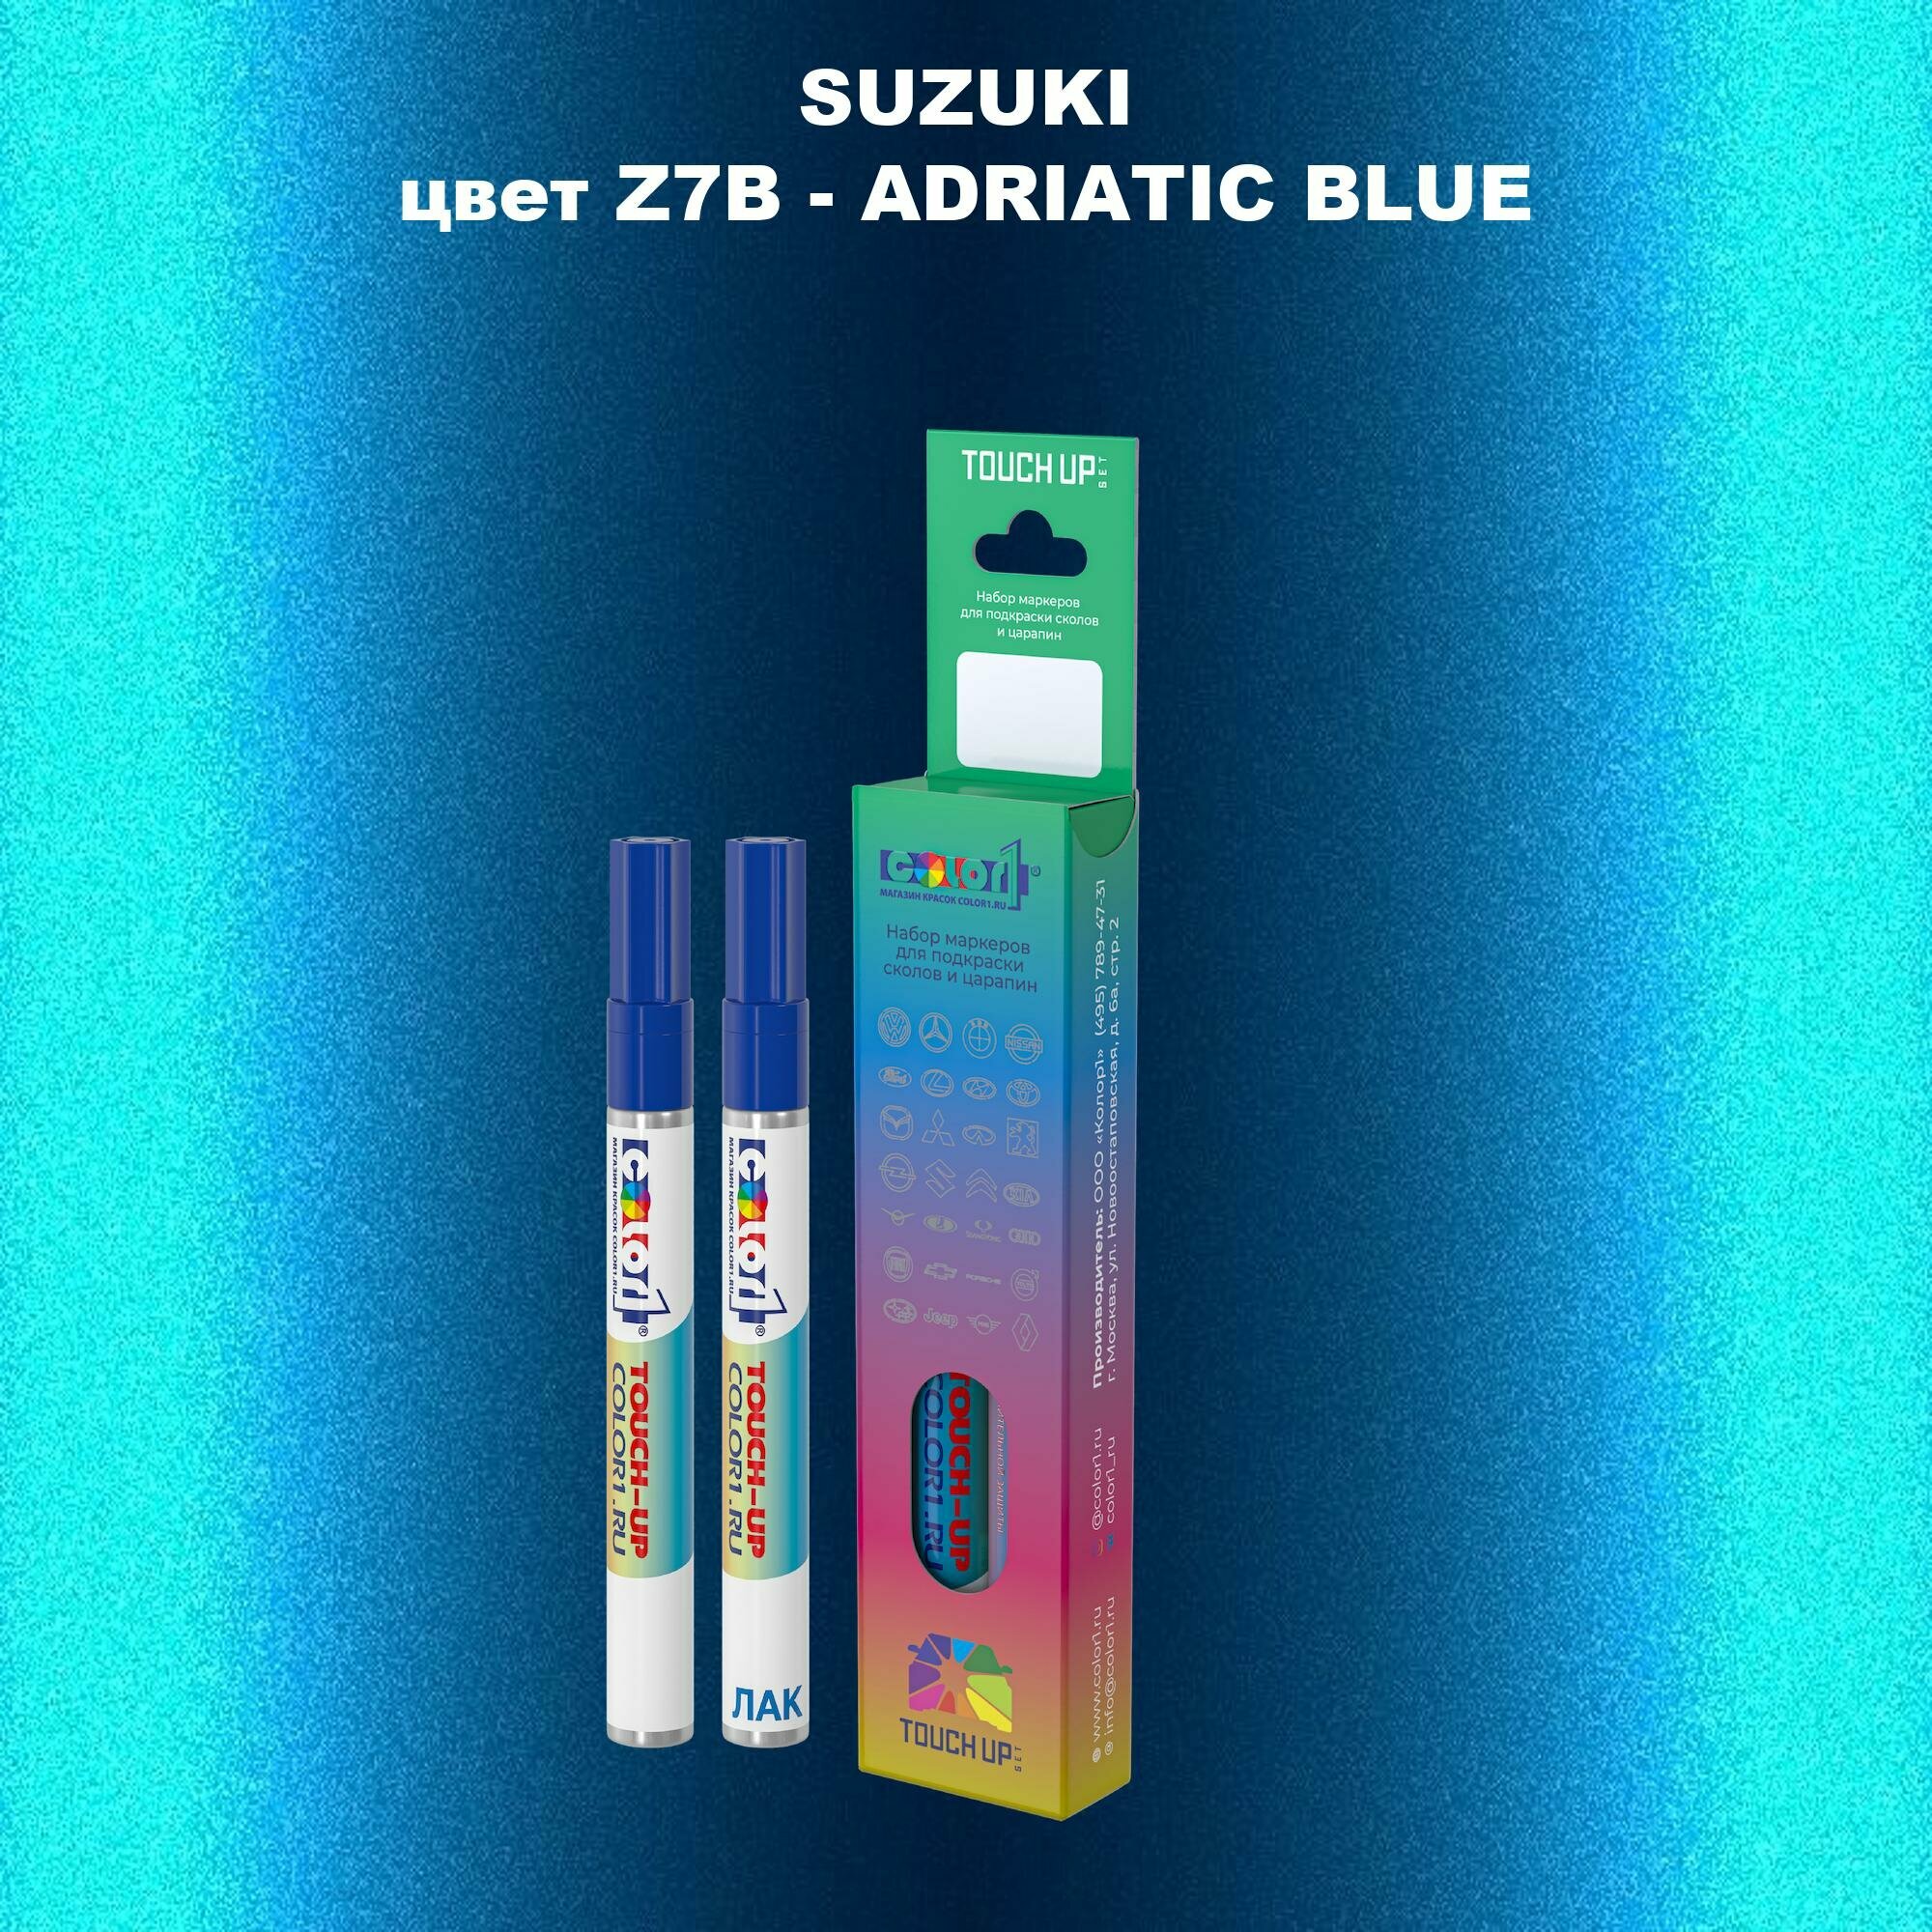 Маркер с краской COLOR1 для SUZUKI цвет Z7B - ADRIATIC BLUE